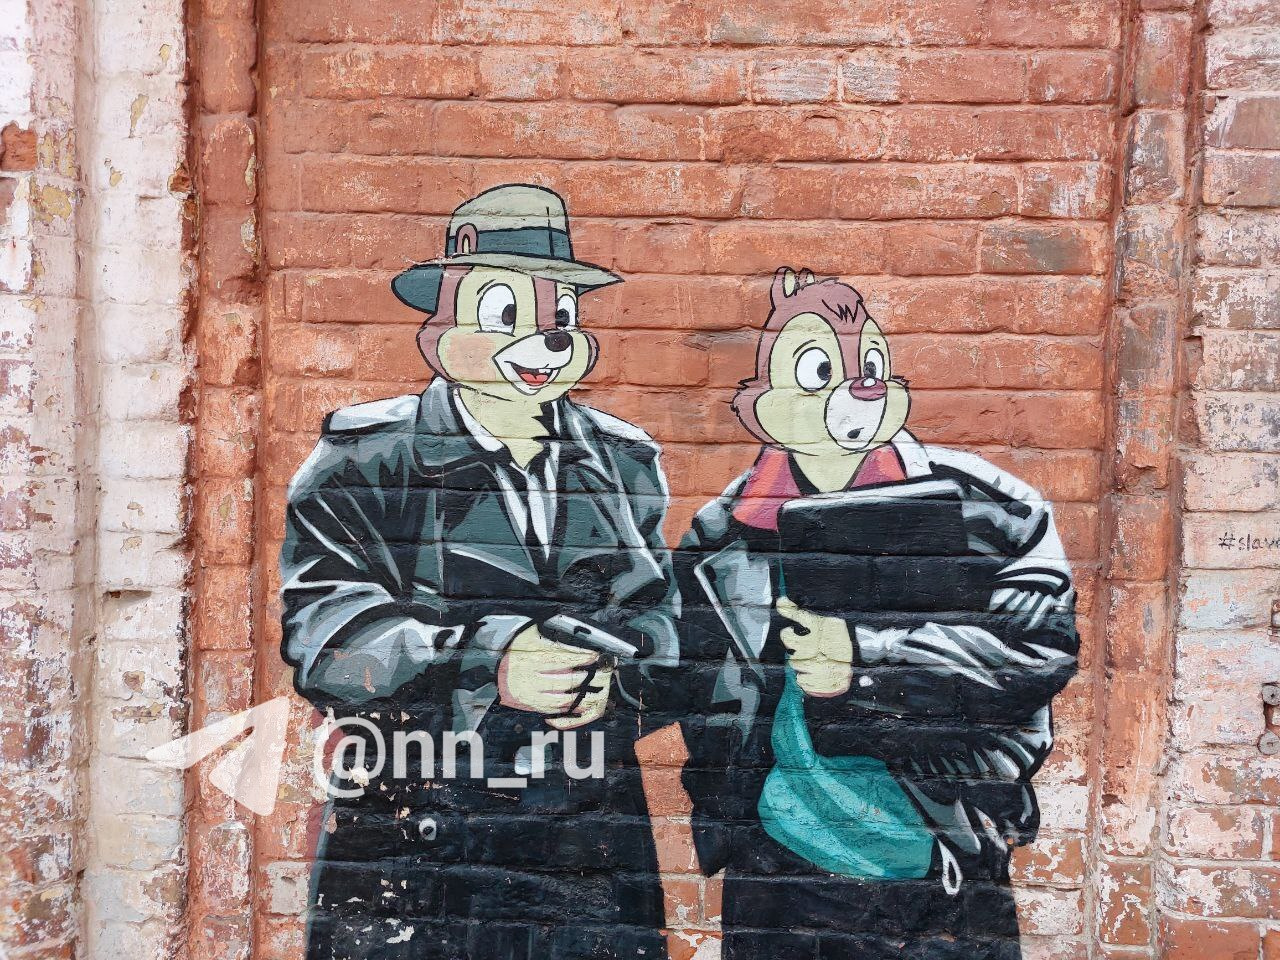 В Нижнем Новгороде закрасили знаменитое граффити с Чипом и Дейлом в образе героев «Жмурок»